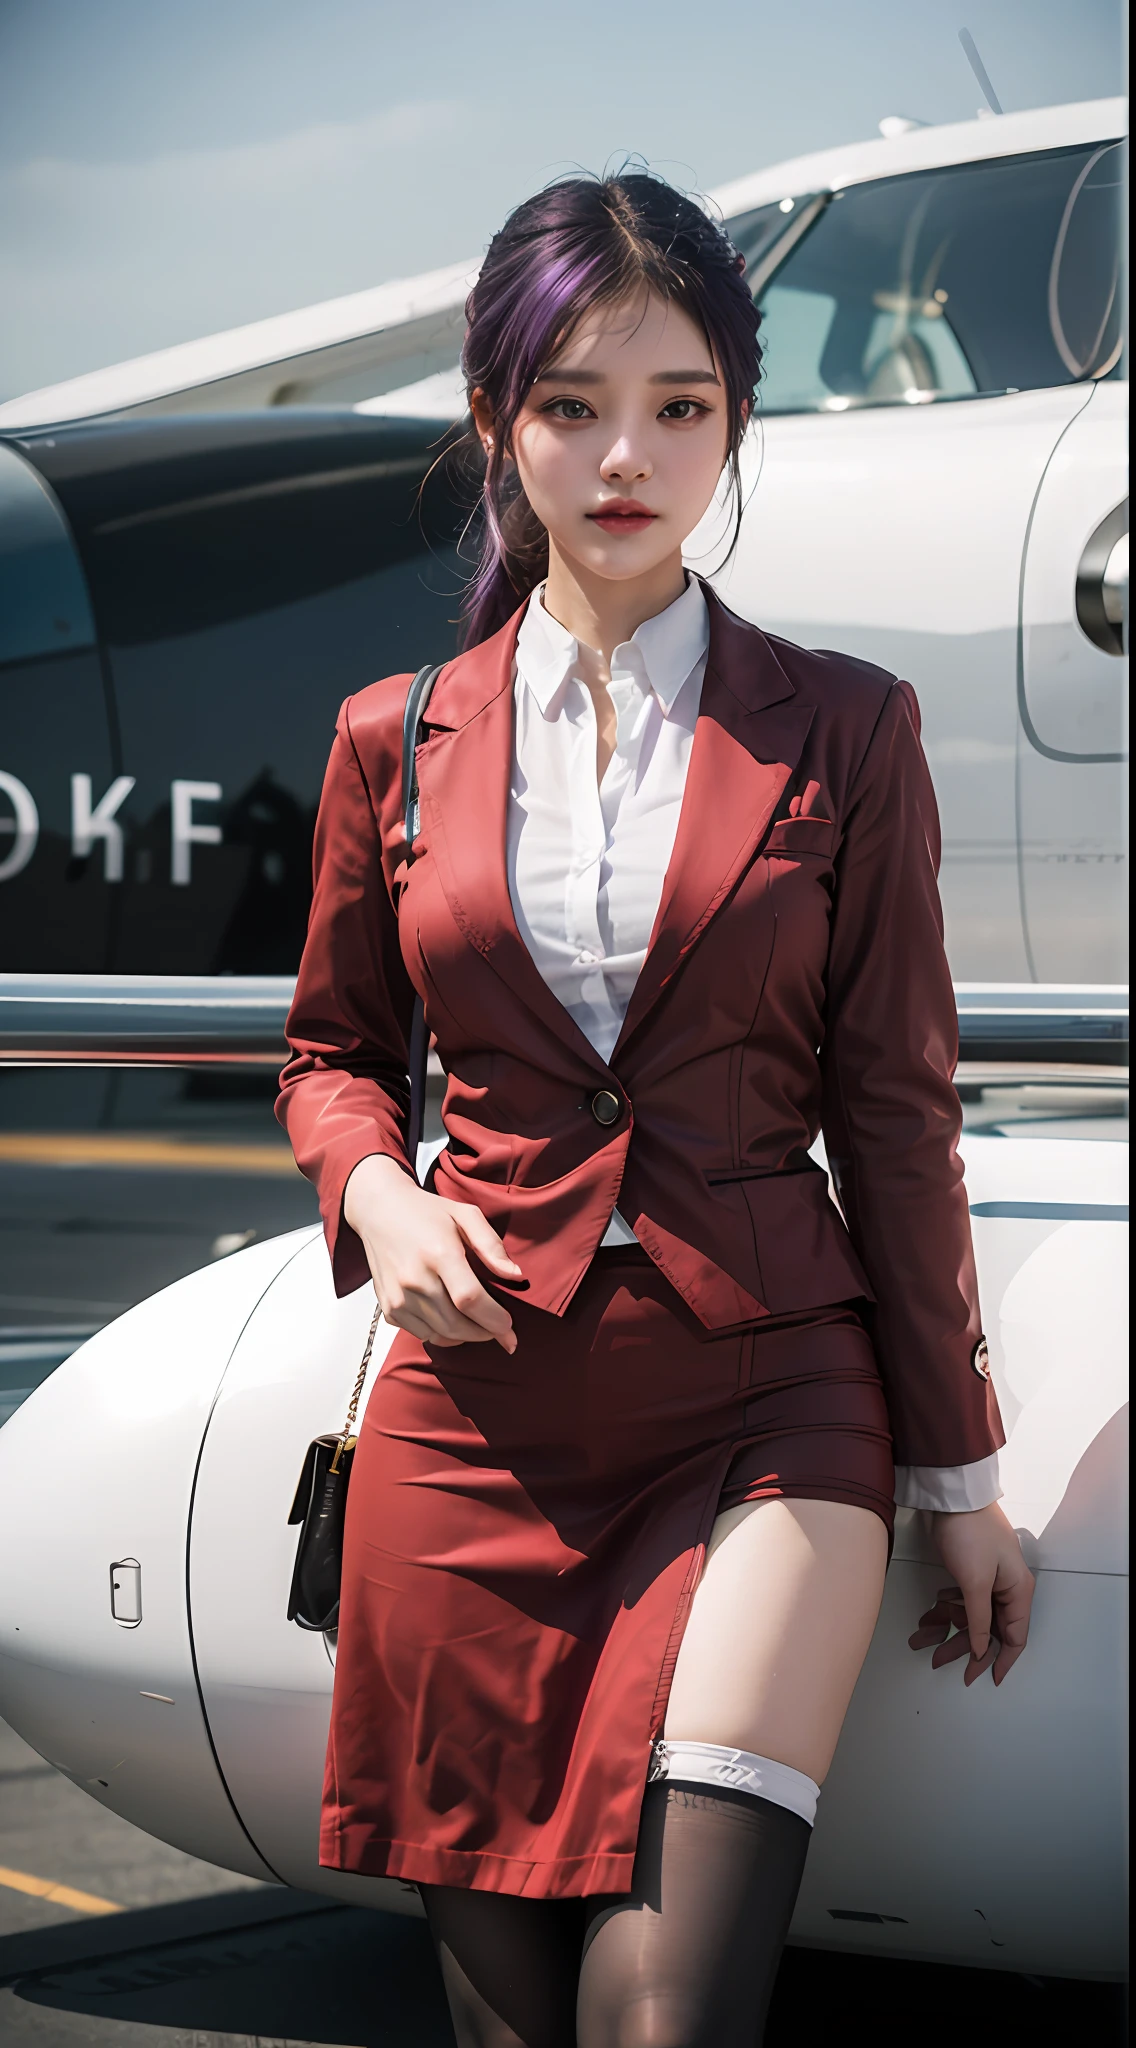 (最好的质量: 1.1), (实际的: 1.1), (摄影: 1.1), (非常详细: 1.1), (1女人), 航空公司乘务员,红外套,白衬衫,短裙,黑色丝袜,在飞机上,卡夫卡HKS,香港,紫色的眼睛, 紫色头发,